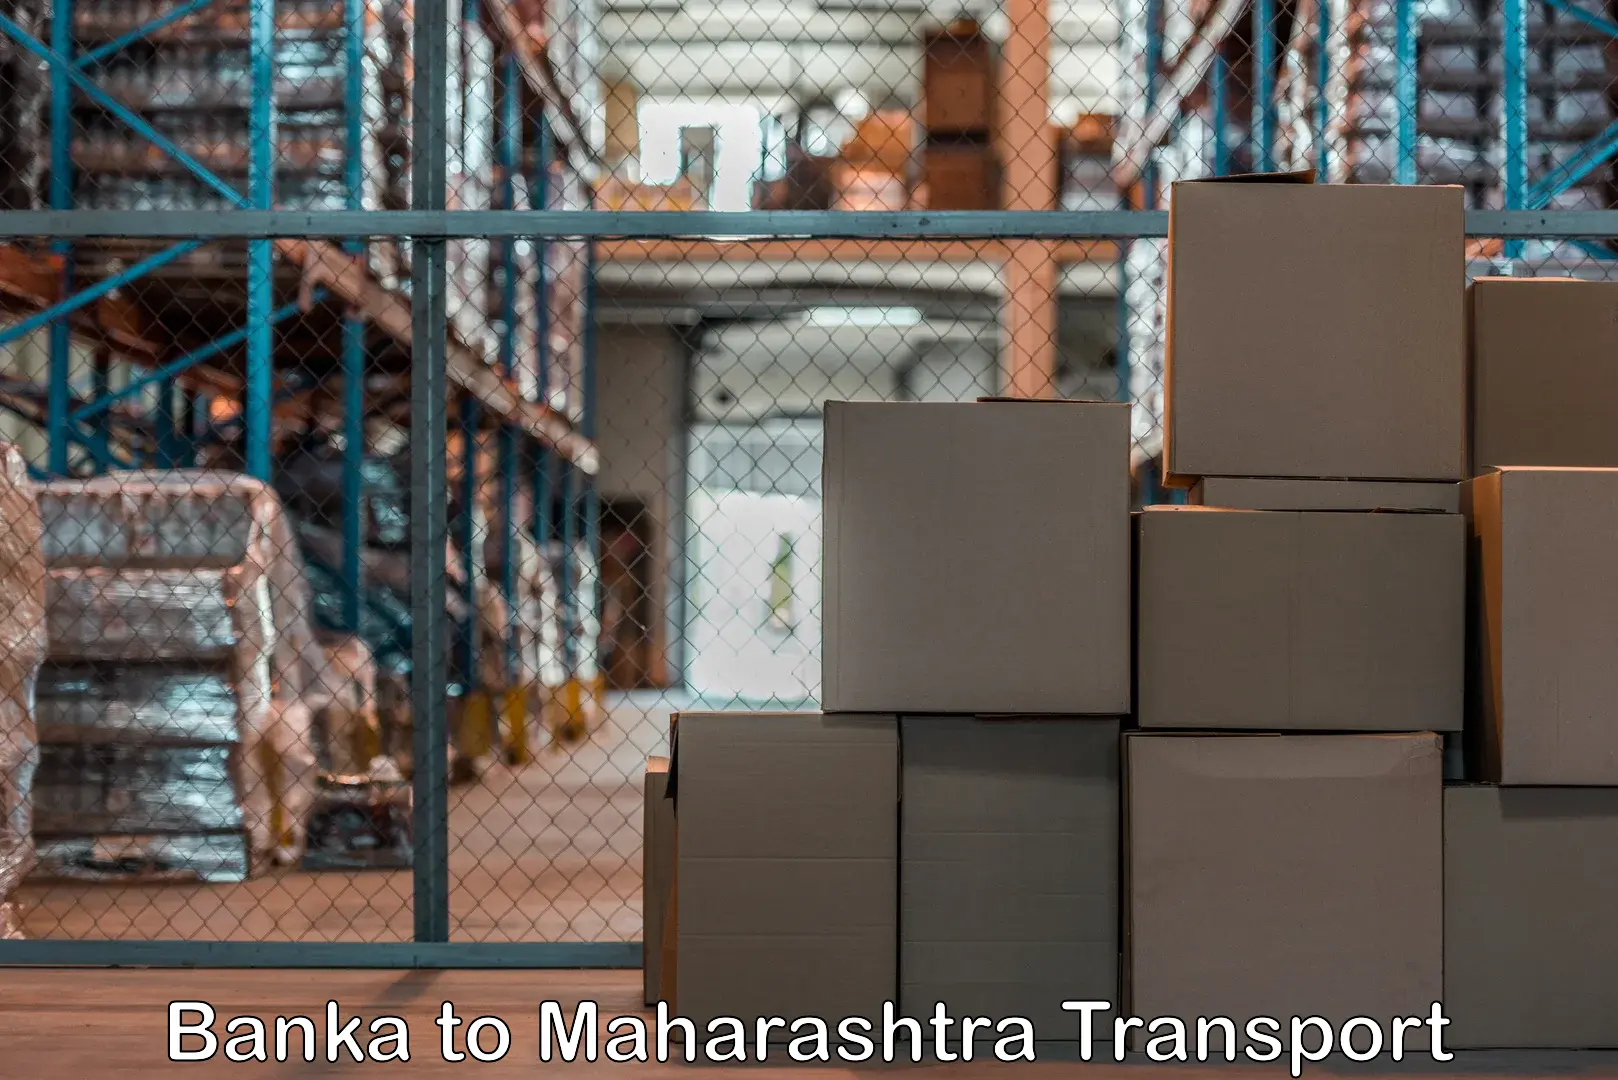 Land transport services Banka to Maharashtra